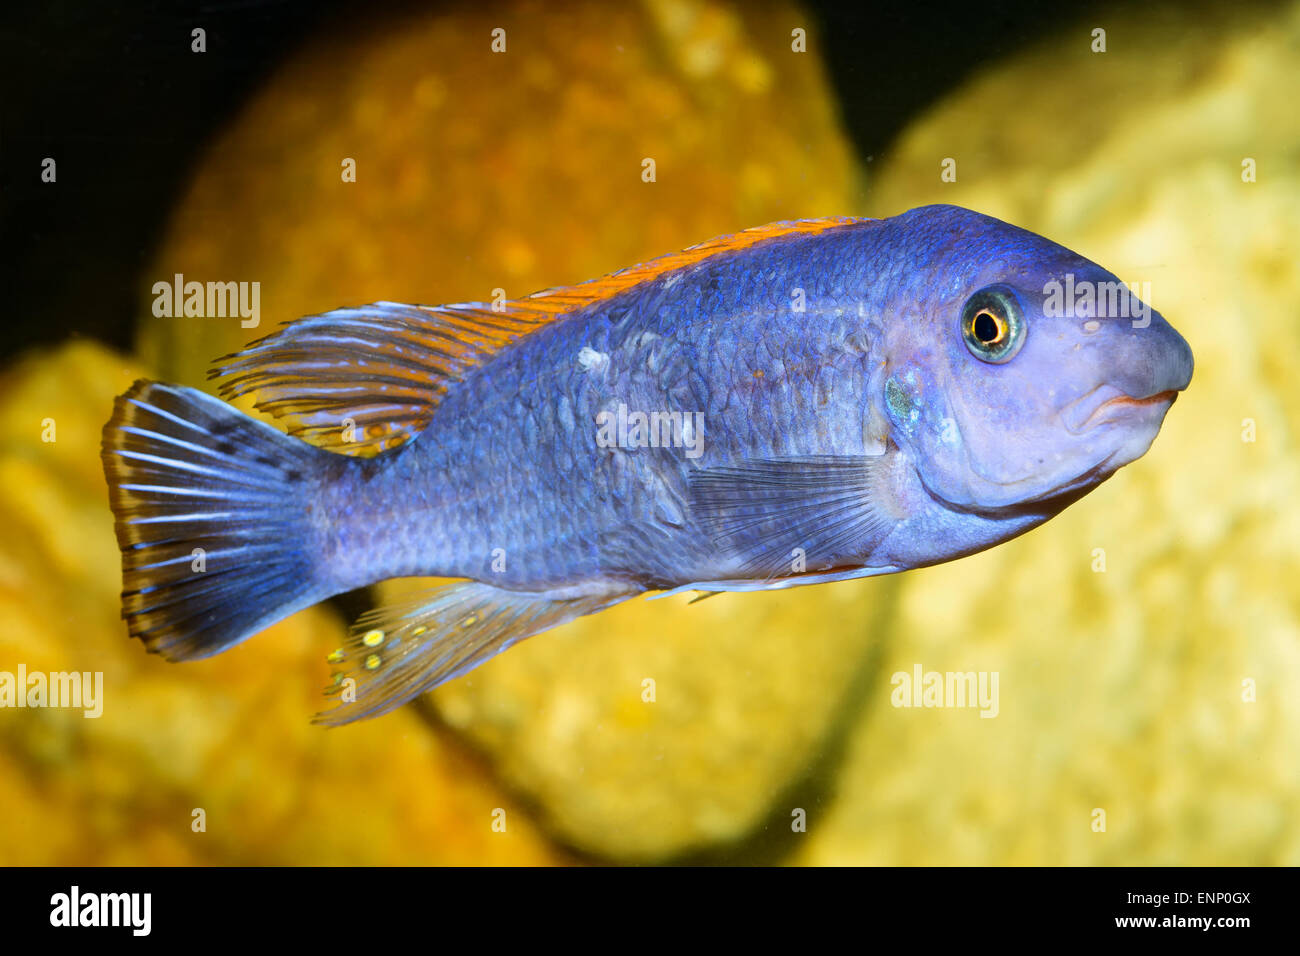 Nice aquarium cichlid fish from genus Labeotropheus. Stock Photo